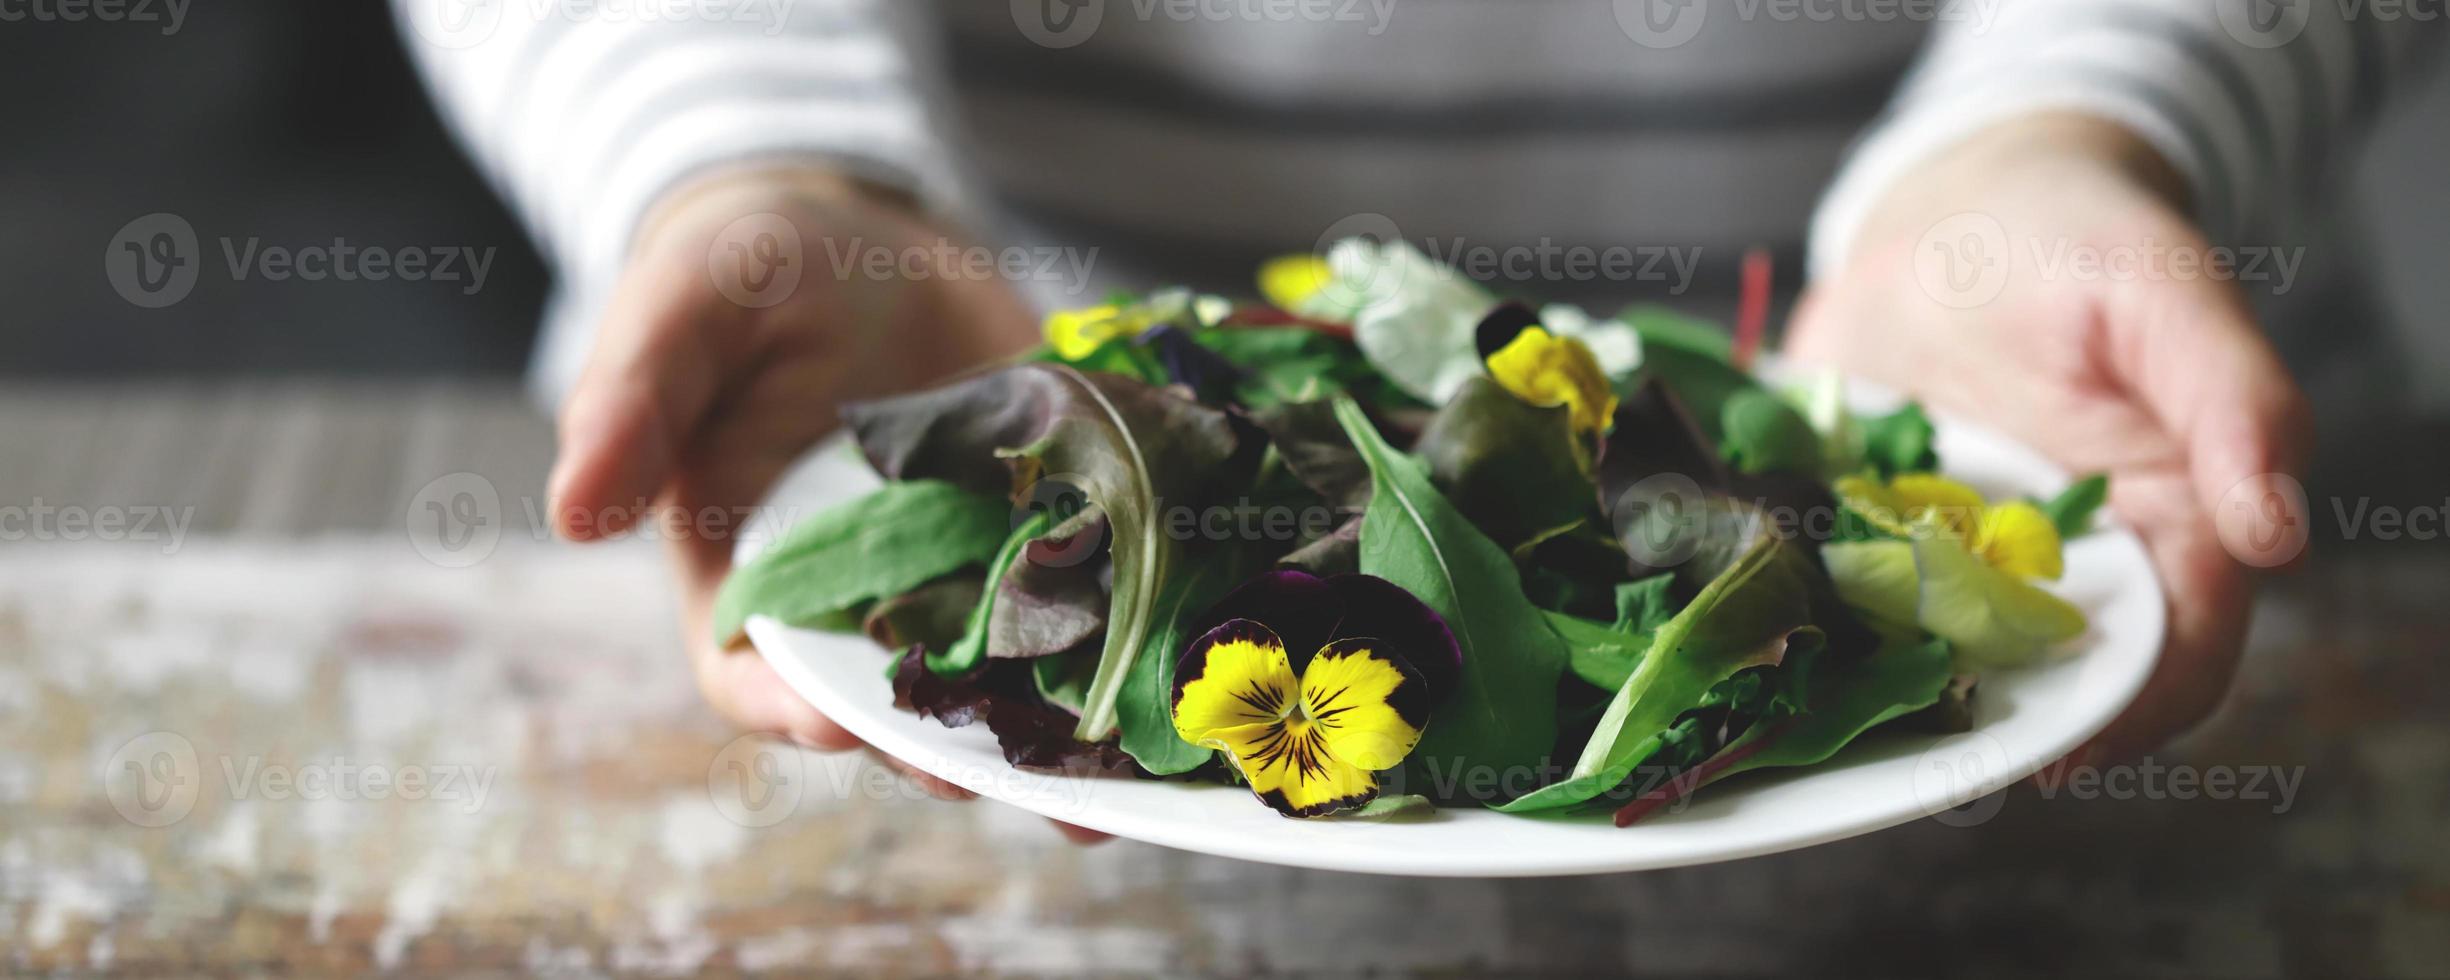 sana insalata con fiori su un piatto foto